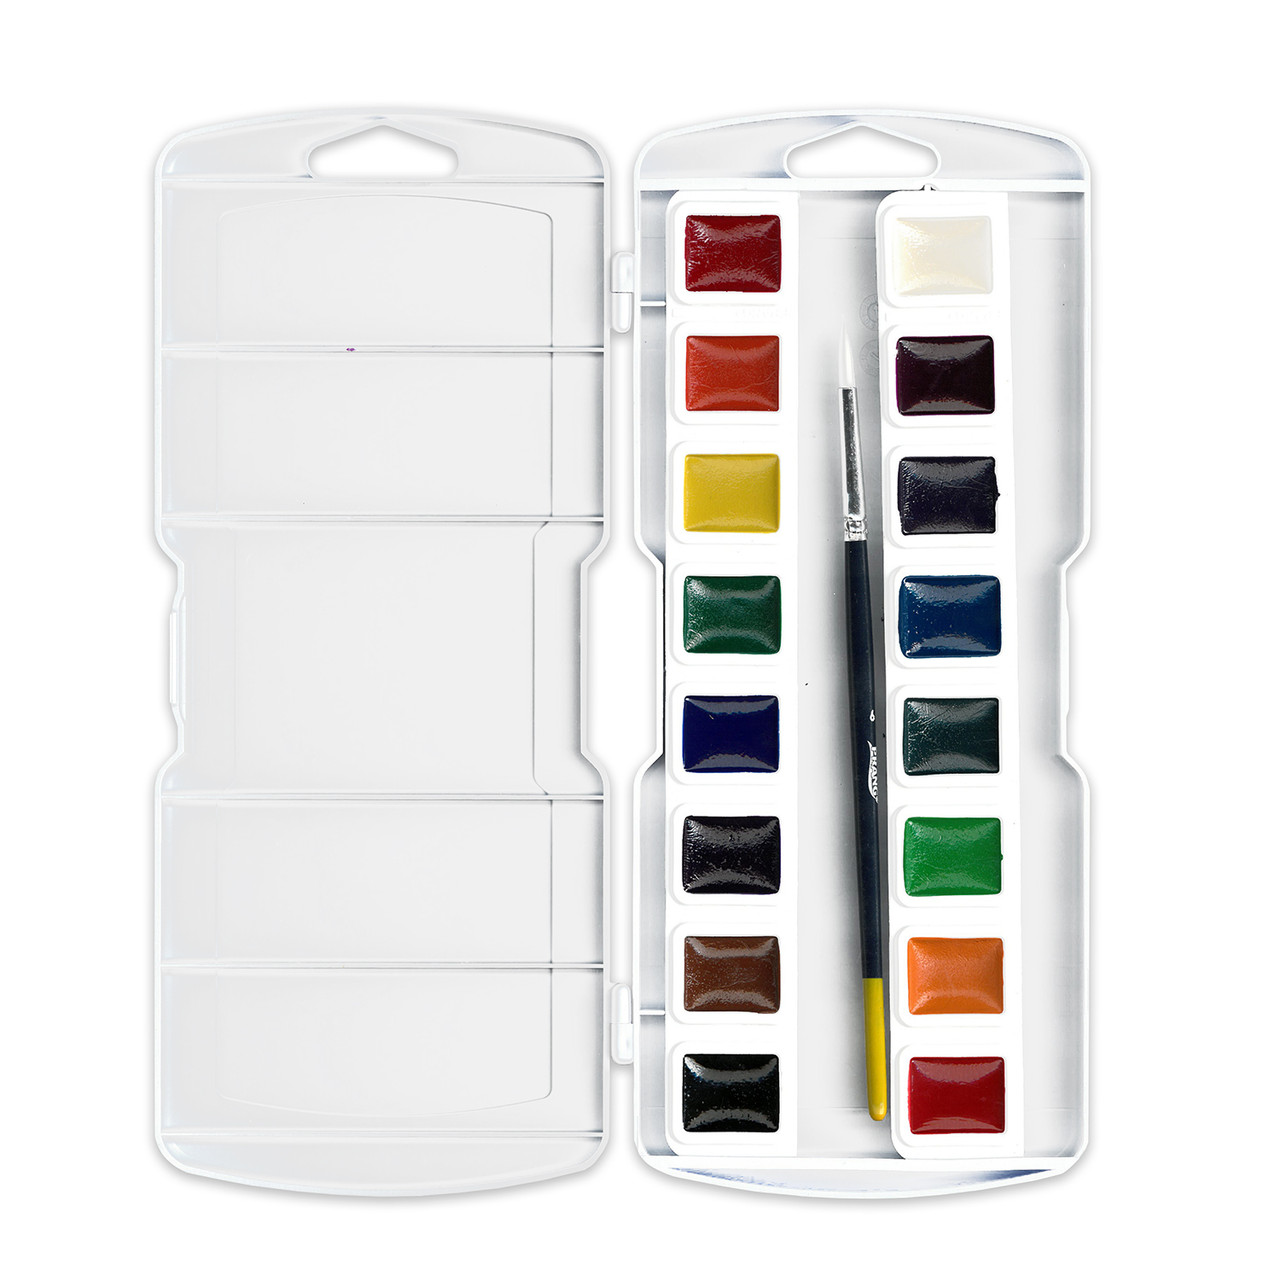 24 Colors Pearl Glitter Watercolor Paint Set Portable Pigment Metallic  Paint Set